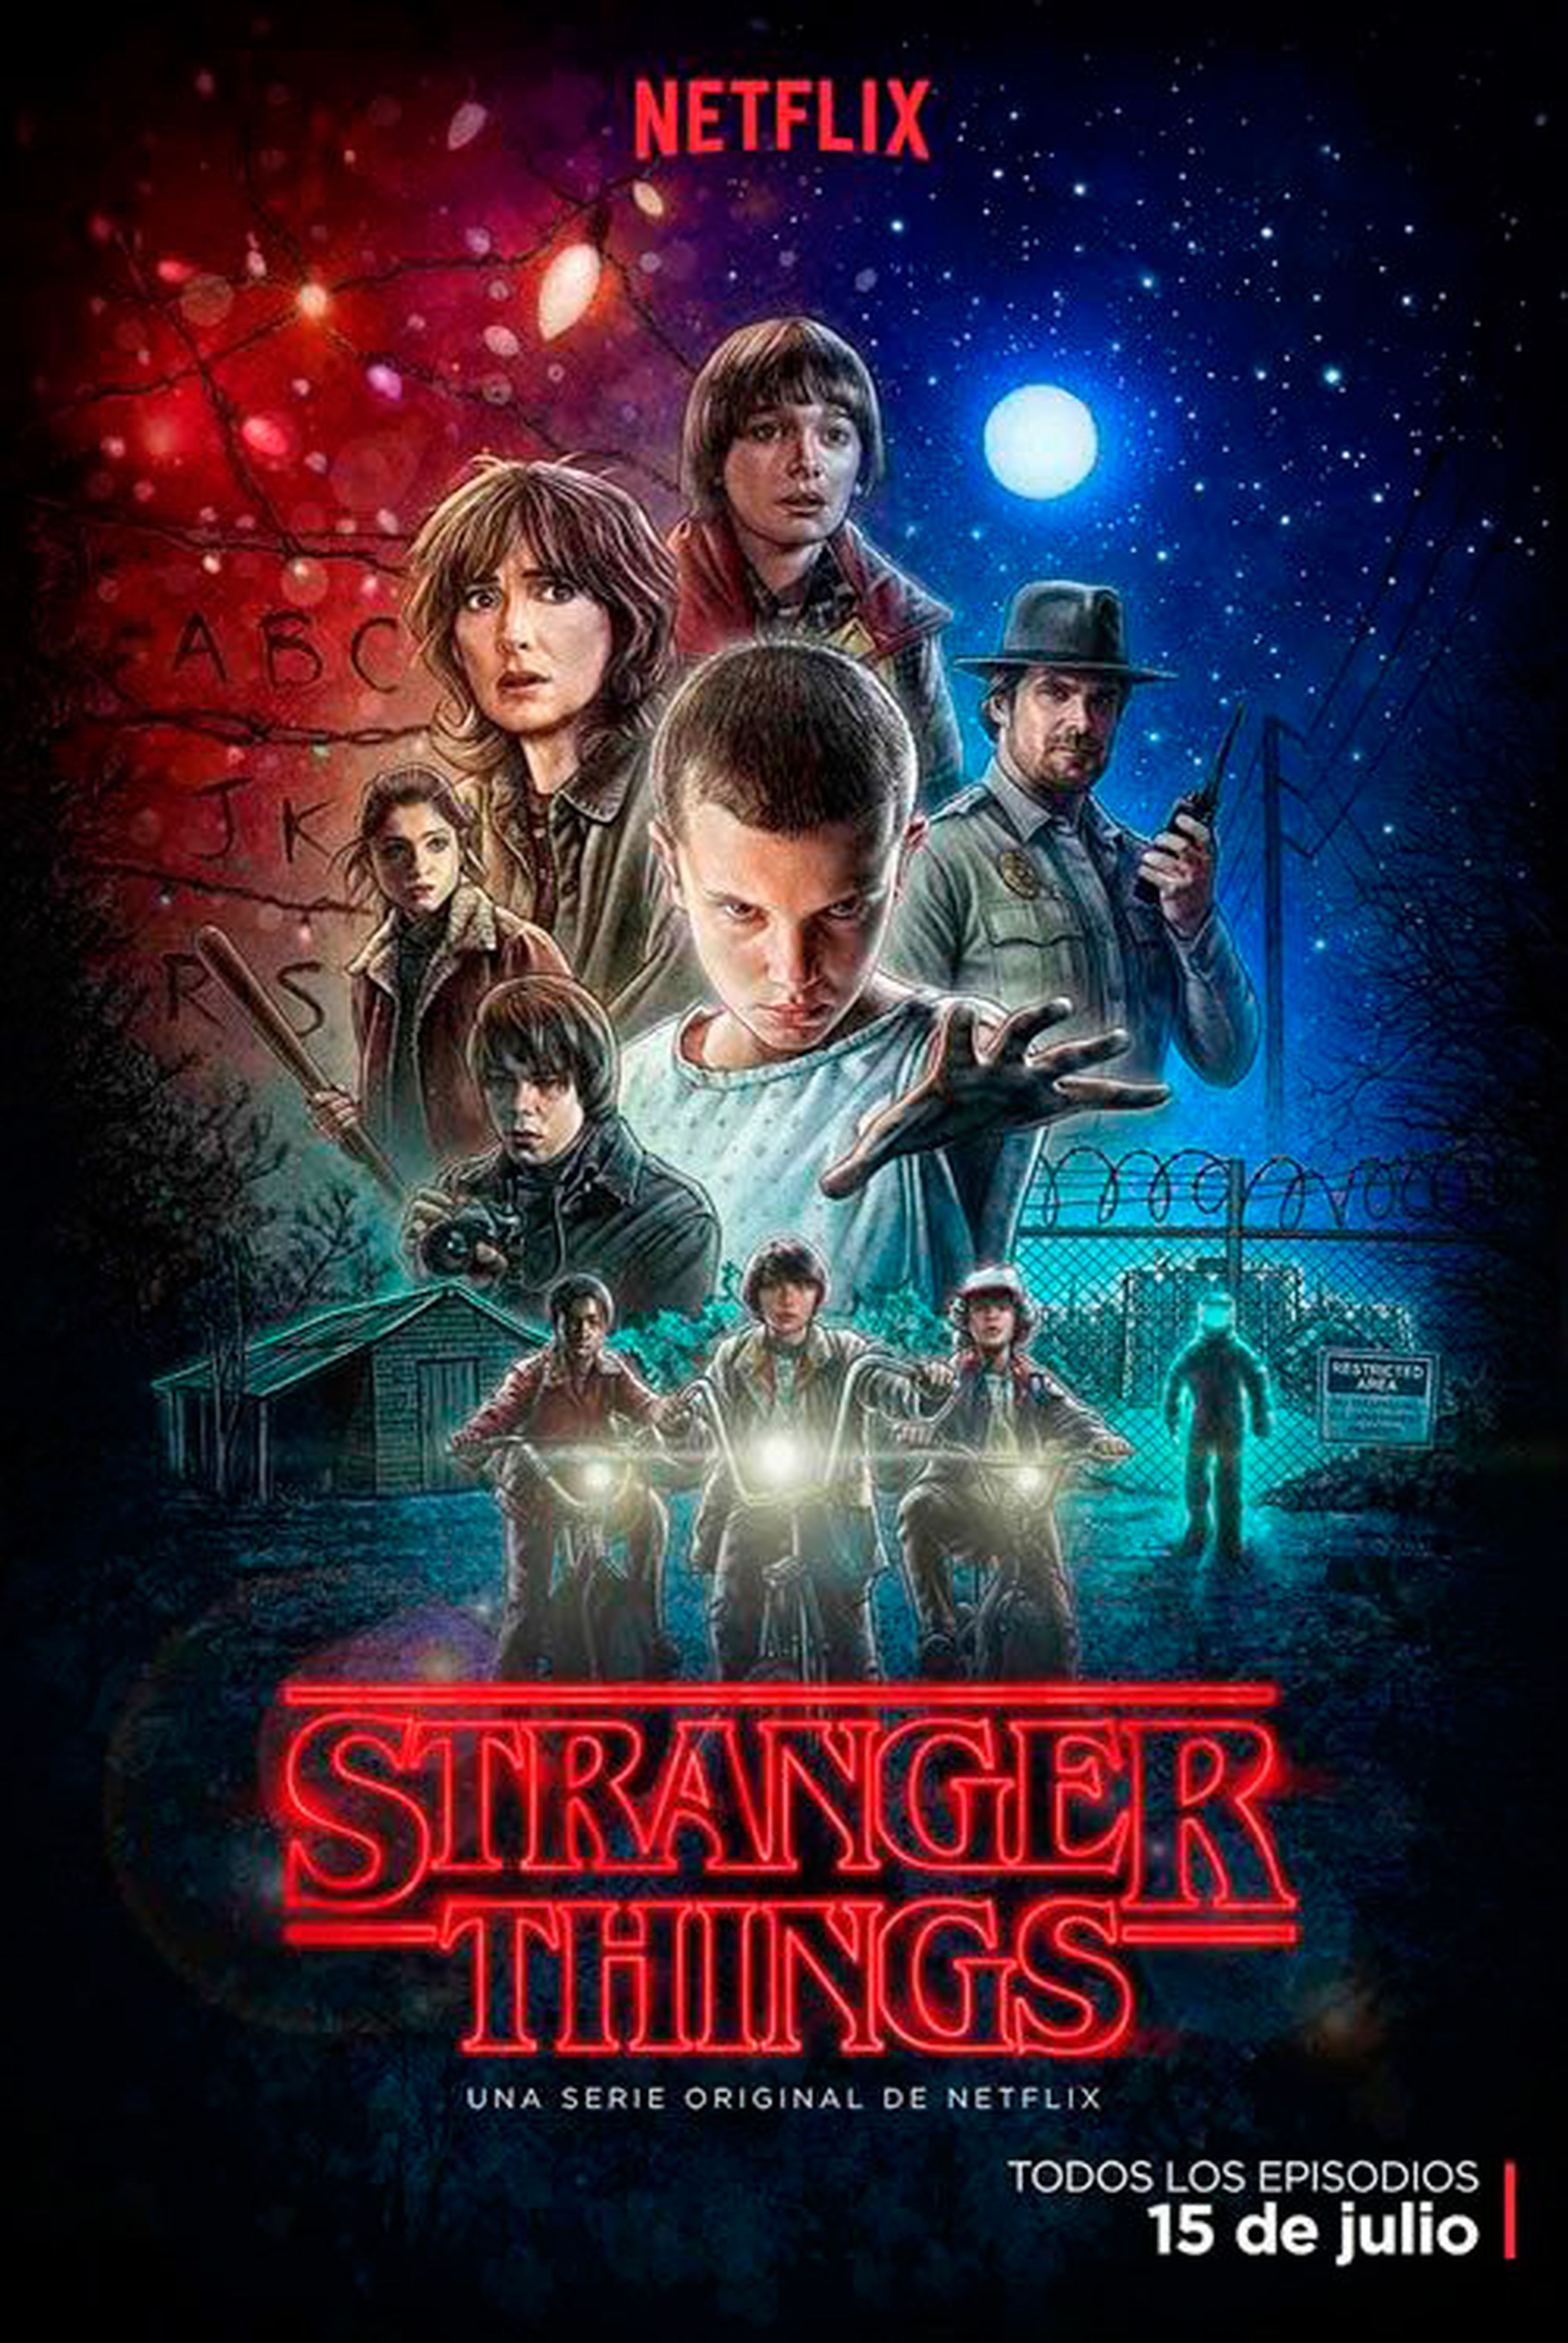 Stranger Things serie Netflix